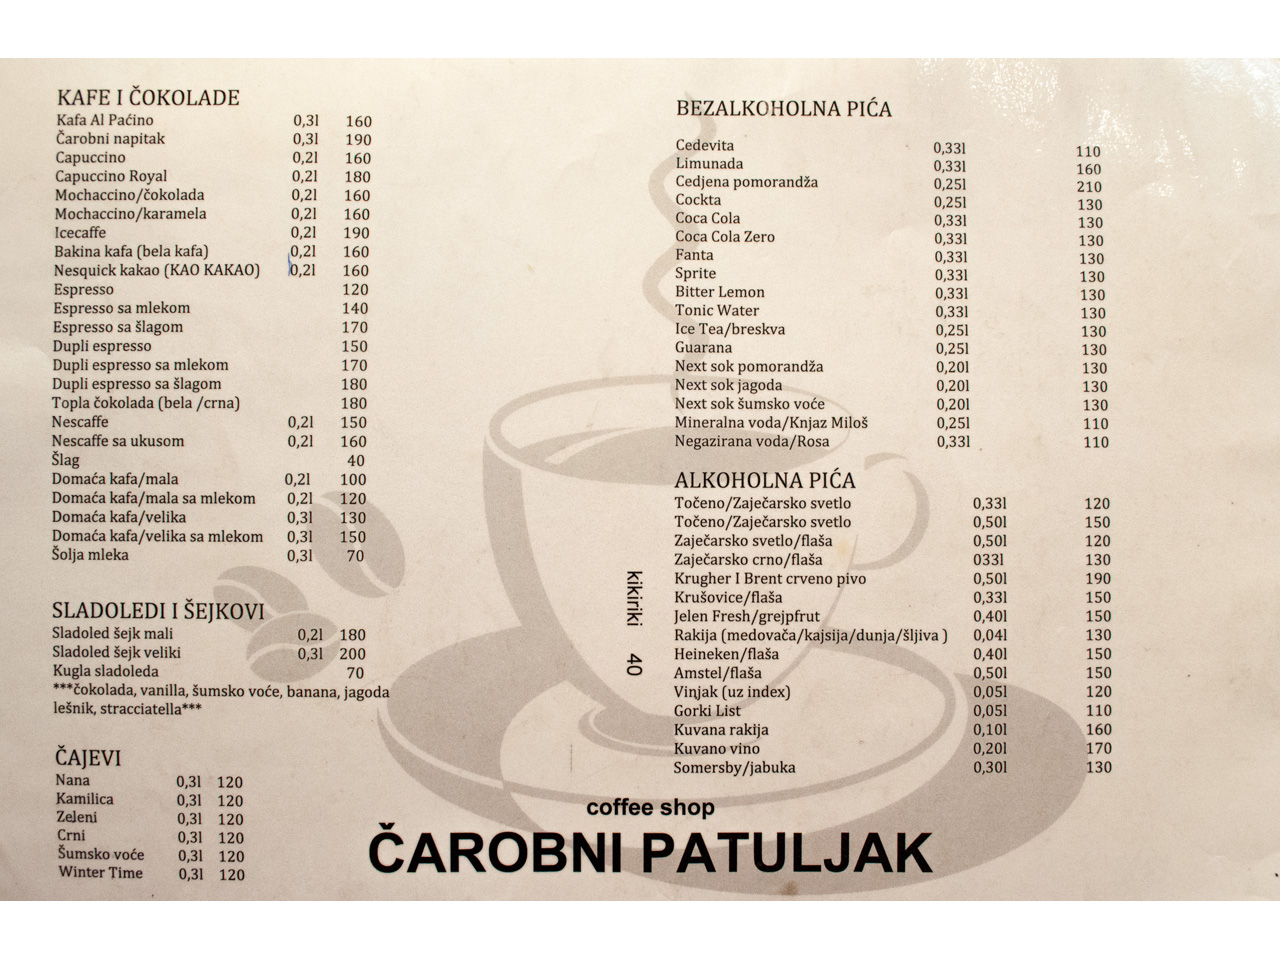 COFFE SHOP ČAROBNI PATULJAK Kafe barovi i klubovi Beograd - Slika 9